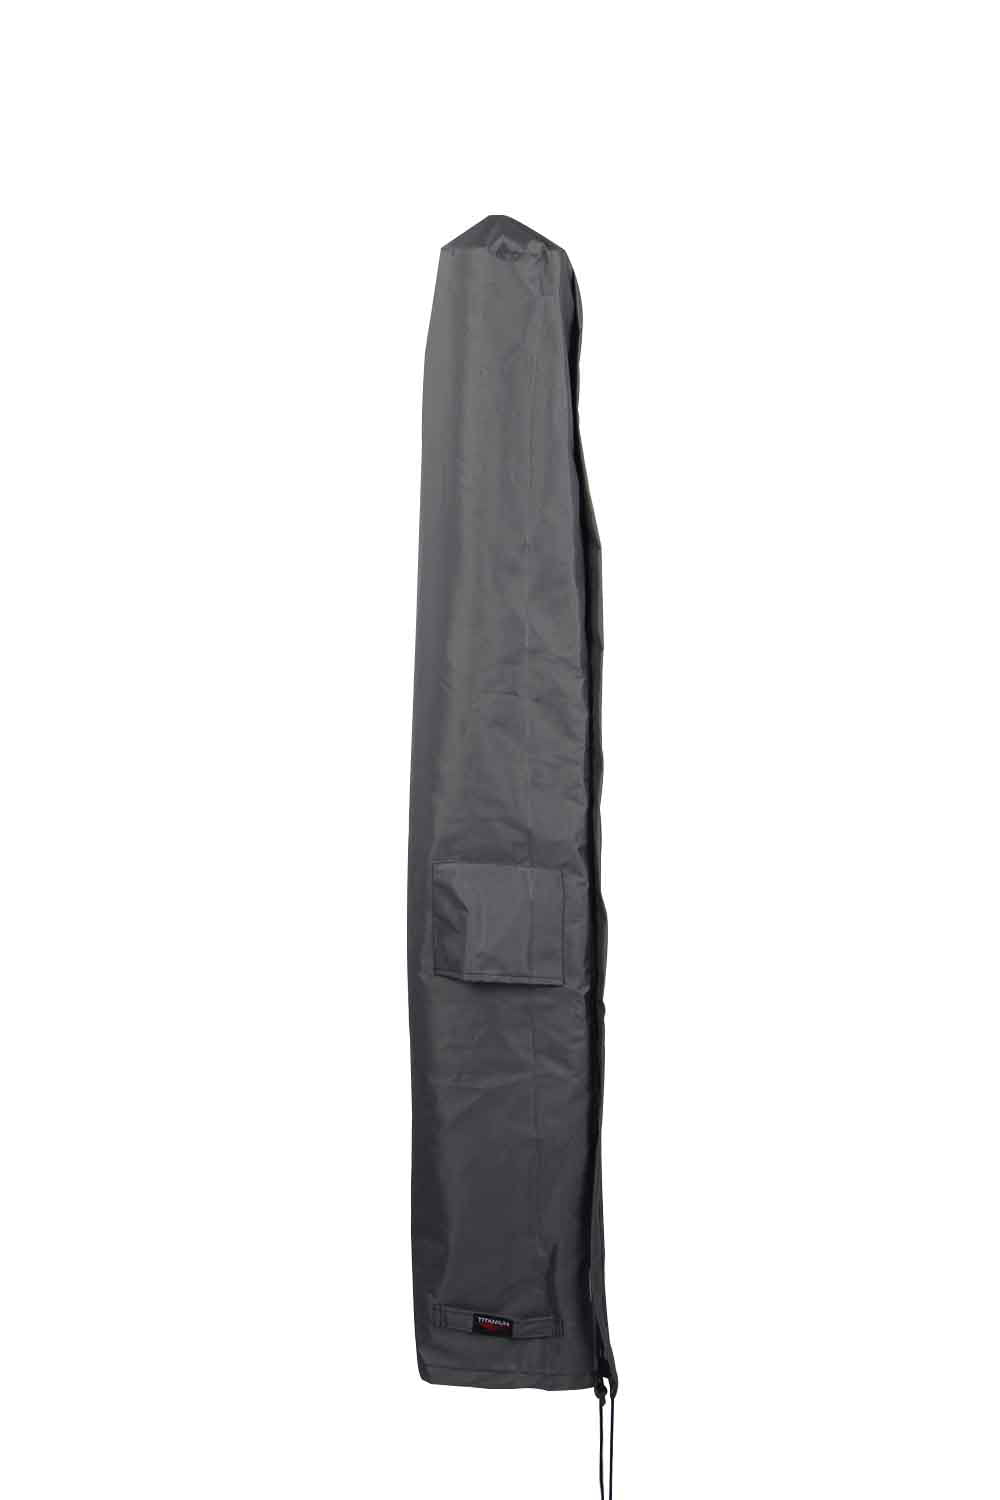 Classic Accessories Veranda™ Umbrella Storage and Carrying Bag-67"W x 7"D x 7"H 